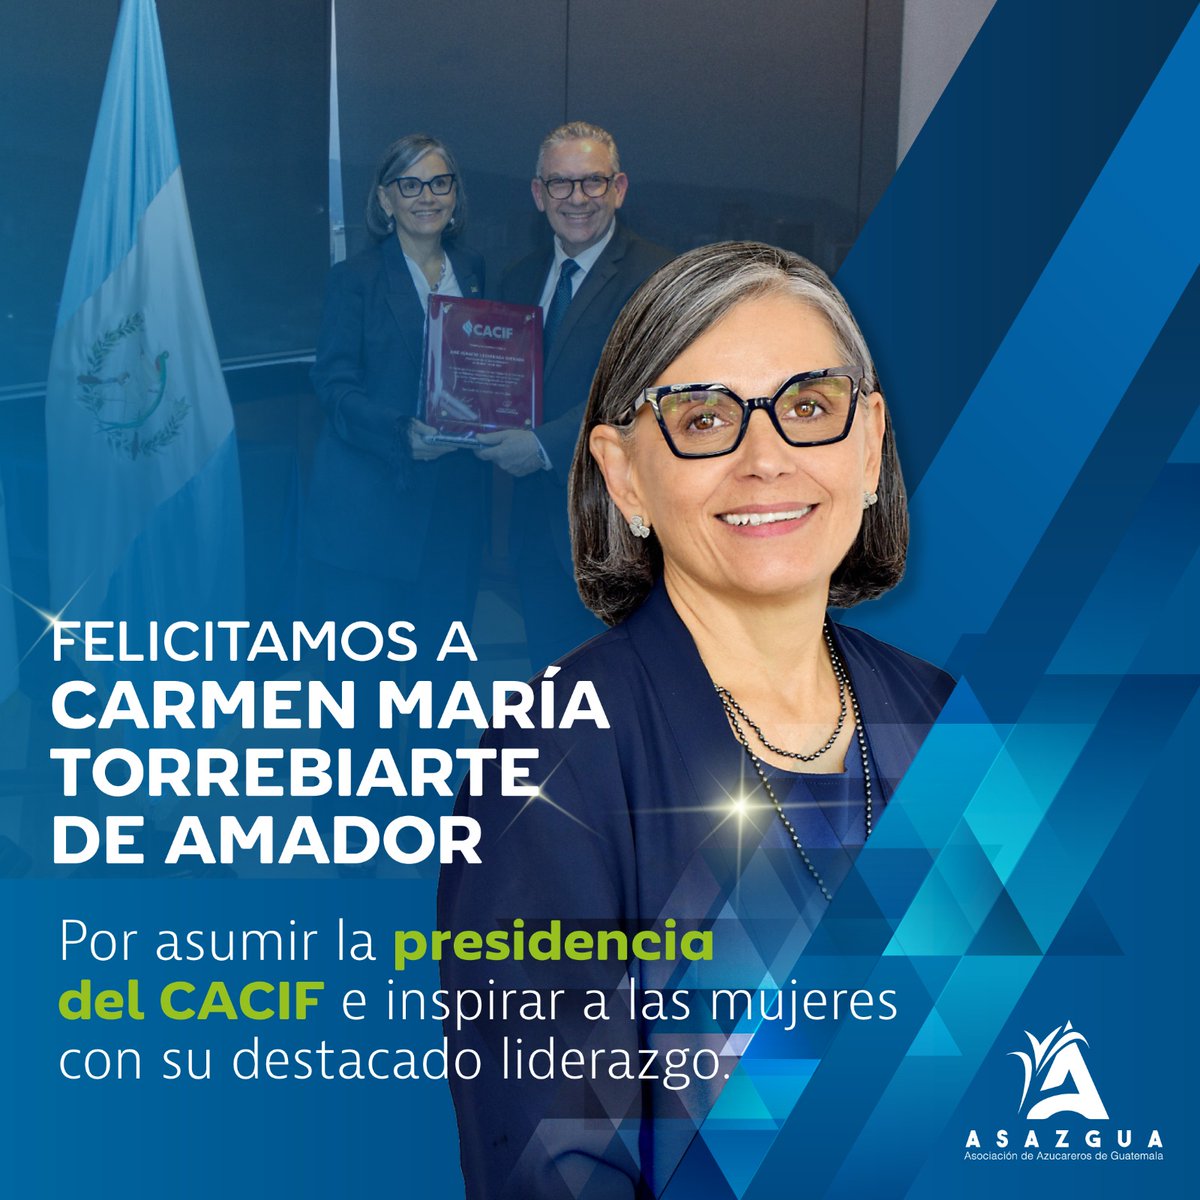 La Agroindustria de la Caña de Azúcar felicita a Carmen María Torrebiarte de Amador por ser la primera mujer en asumir la presidencia del Comité Coordinador de Asociaciones Agrícolas, Comerciales, Industriales y Financieras -CACIF-. @CACIFGuatemala #Agroindustria #CACIF